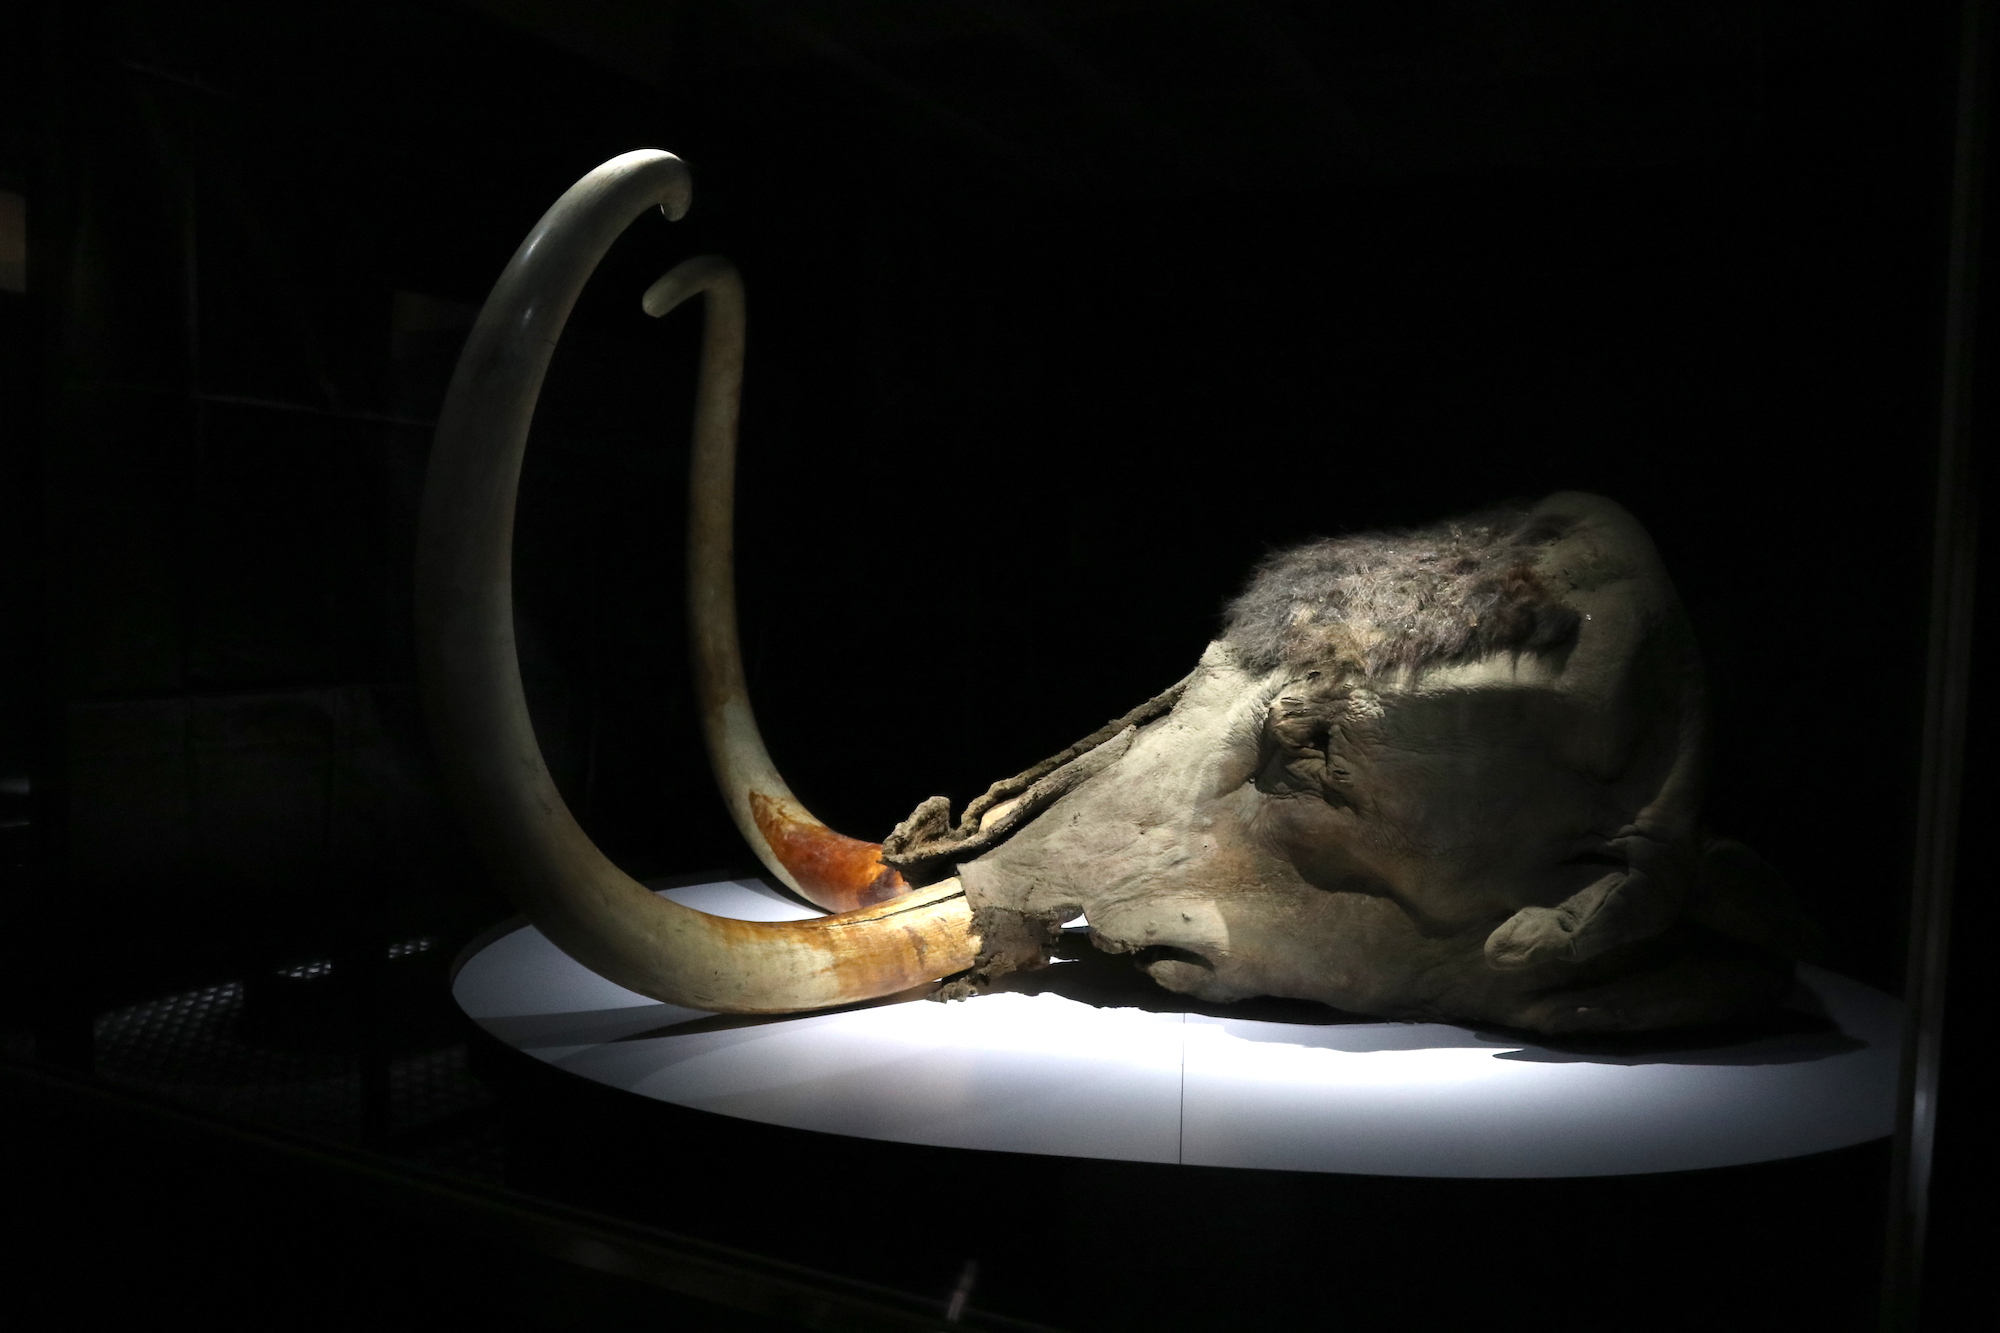 「ユカギルマンモス」の頭部冷凍標本